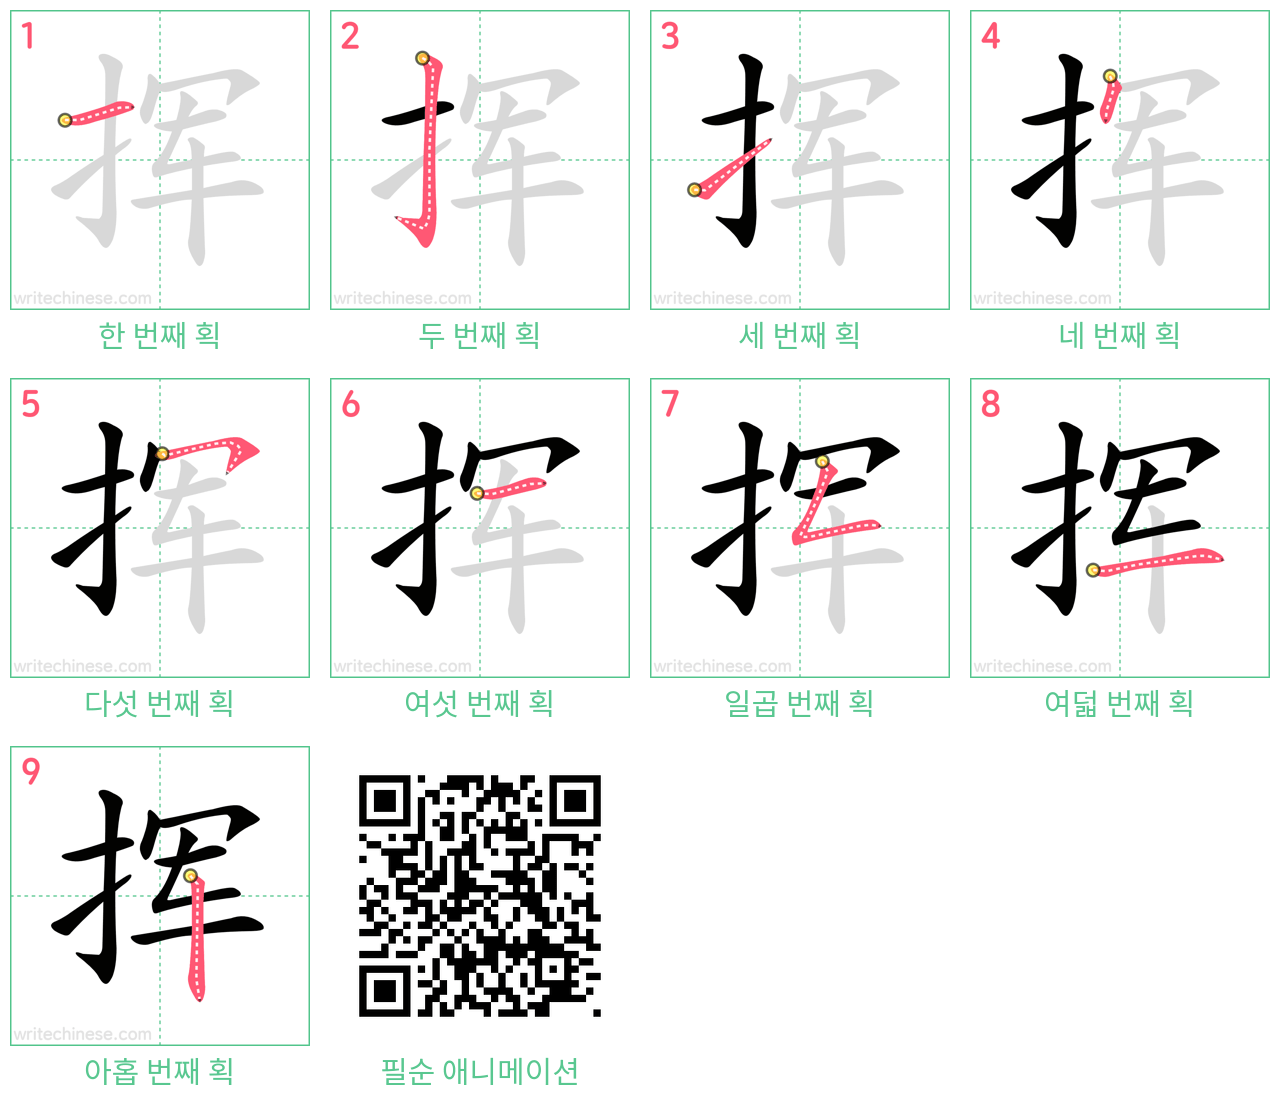 挥 step-by-step stroke order diagrams